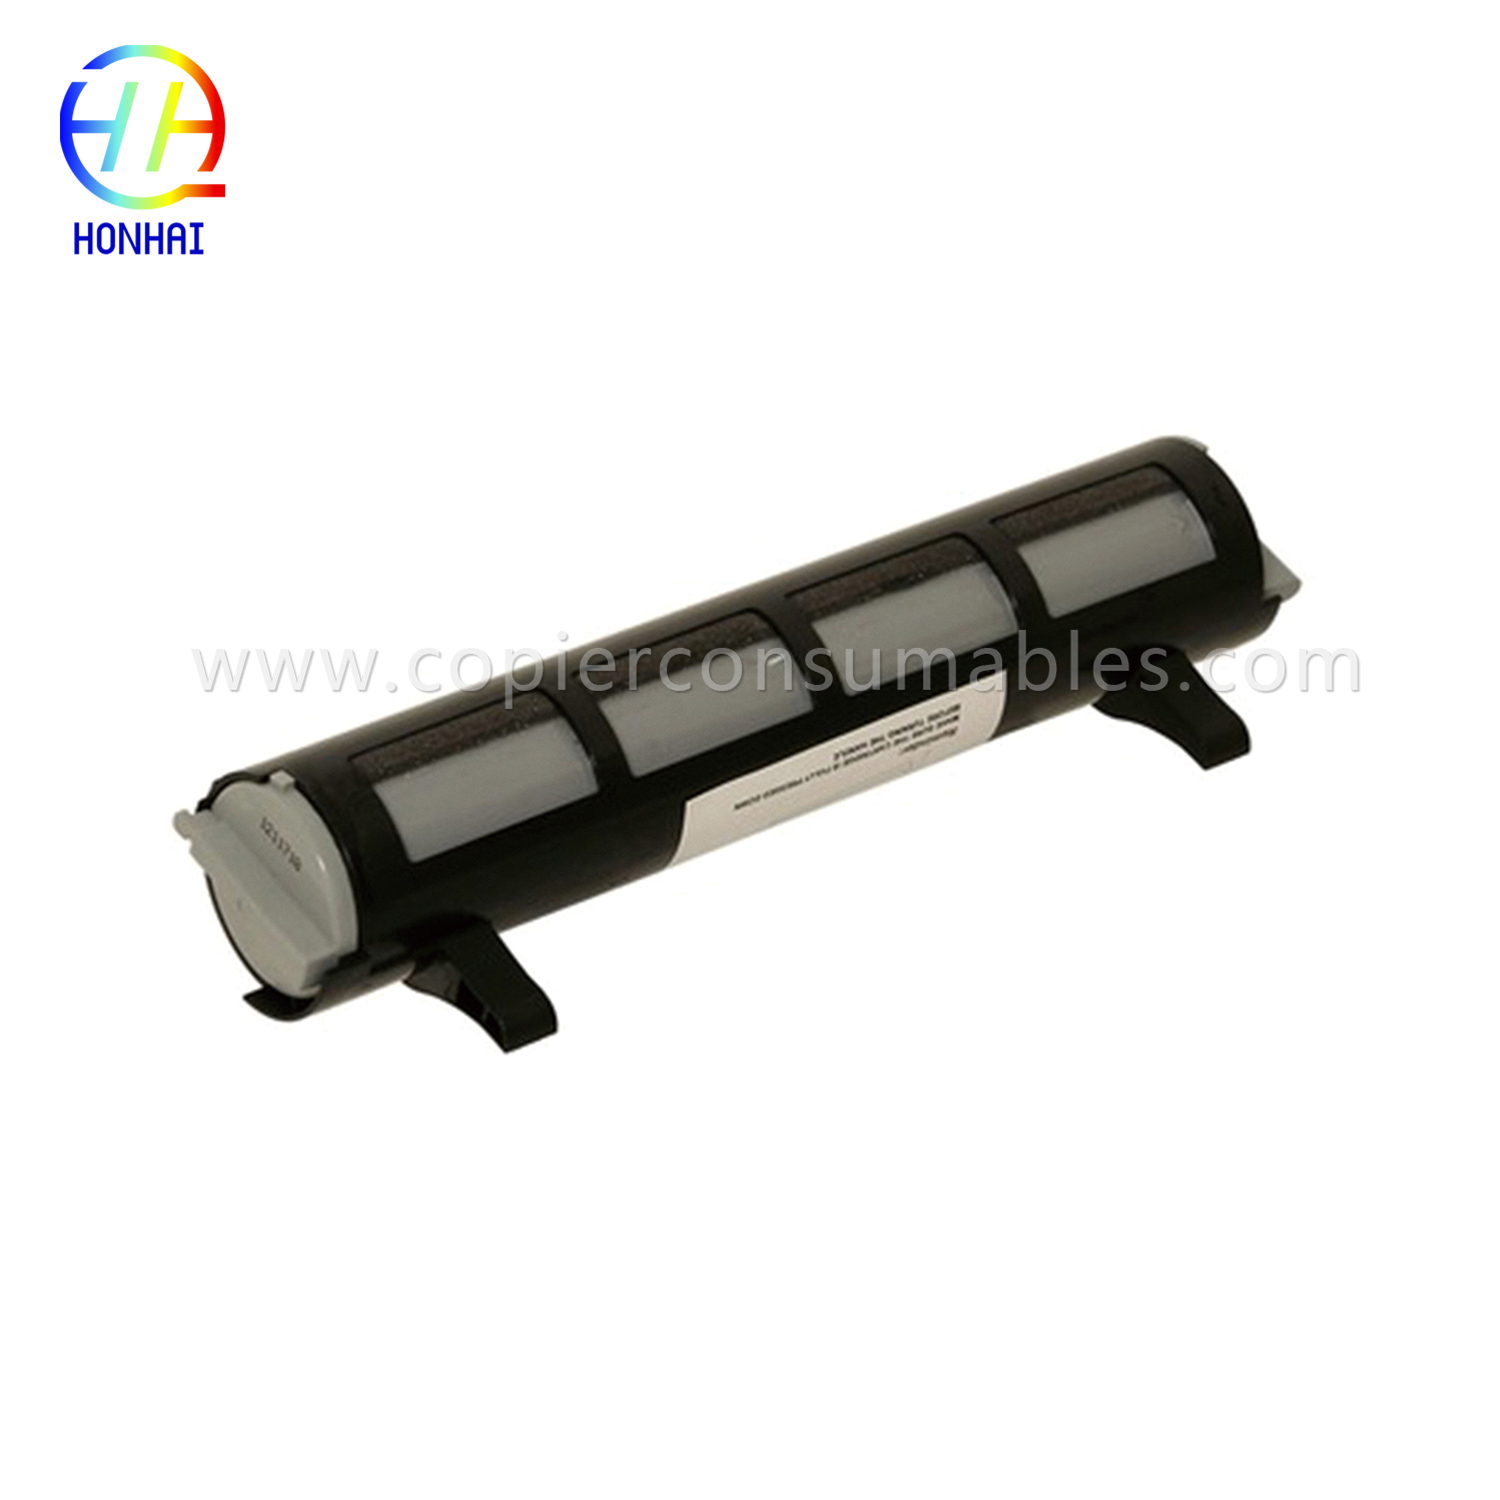 I-Black Toner Cartridge ye-Panasonic Kx-FL511 Kx-Fa83 Kx-FL541 Kx-FL611 Kx-Flm651 Kx-Flm661 Kx-Flm671 (2) 拷贝